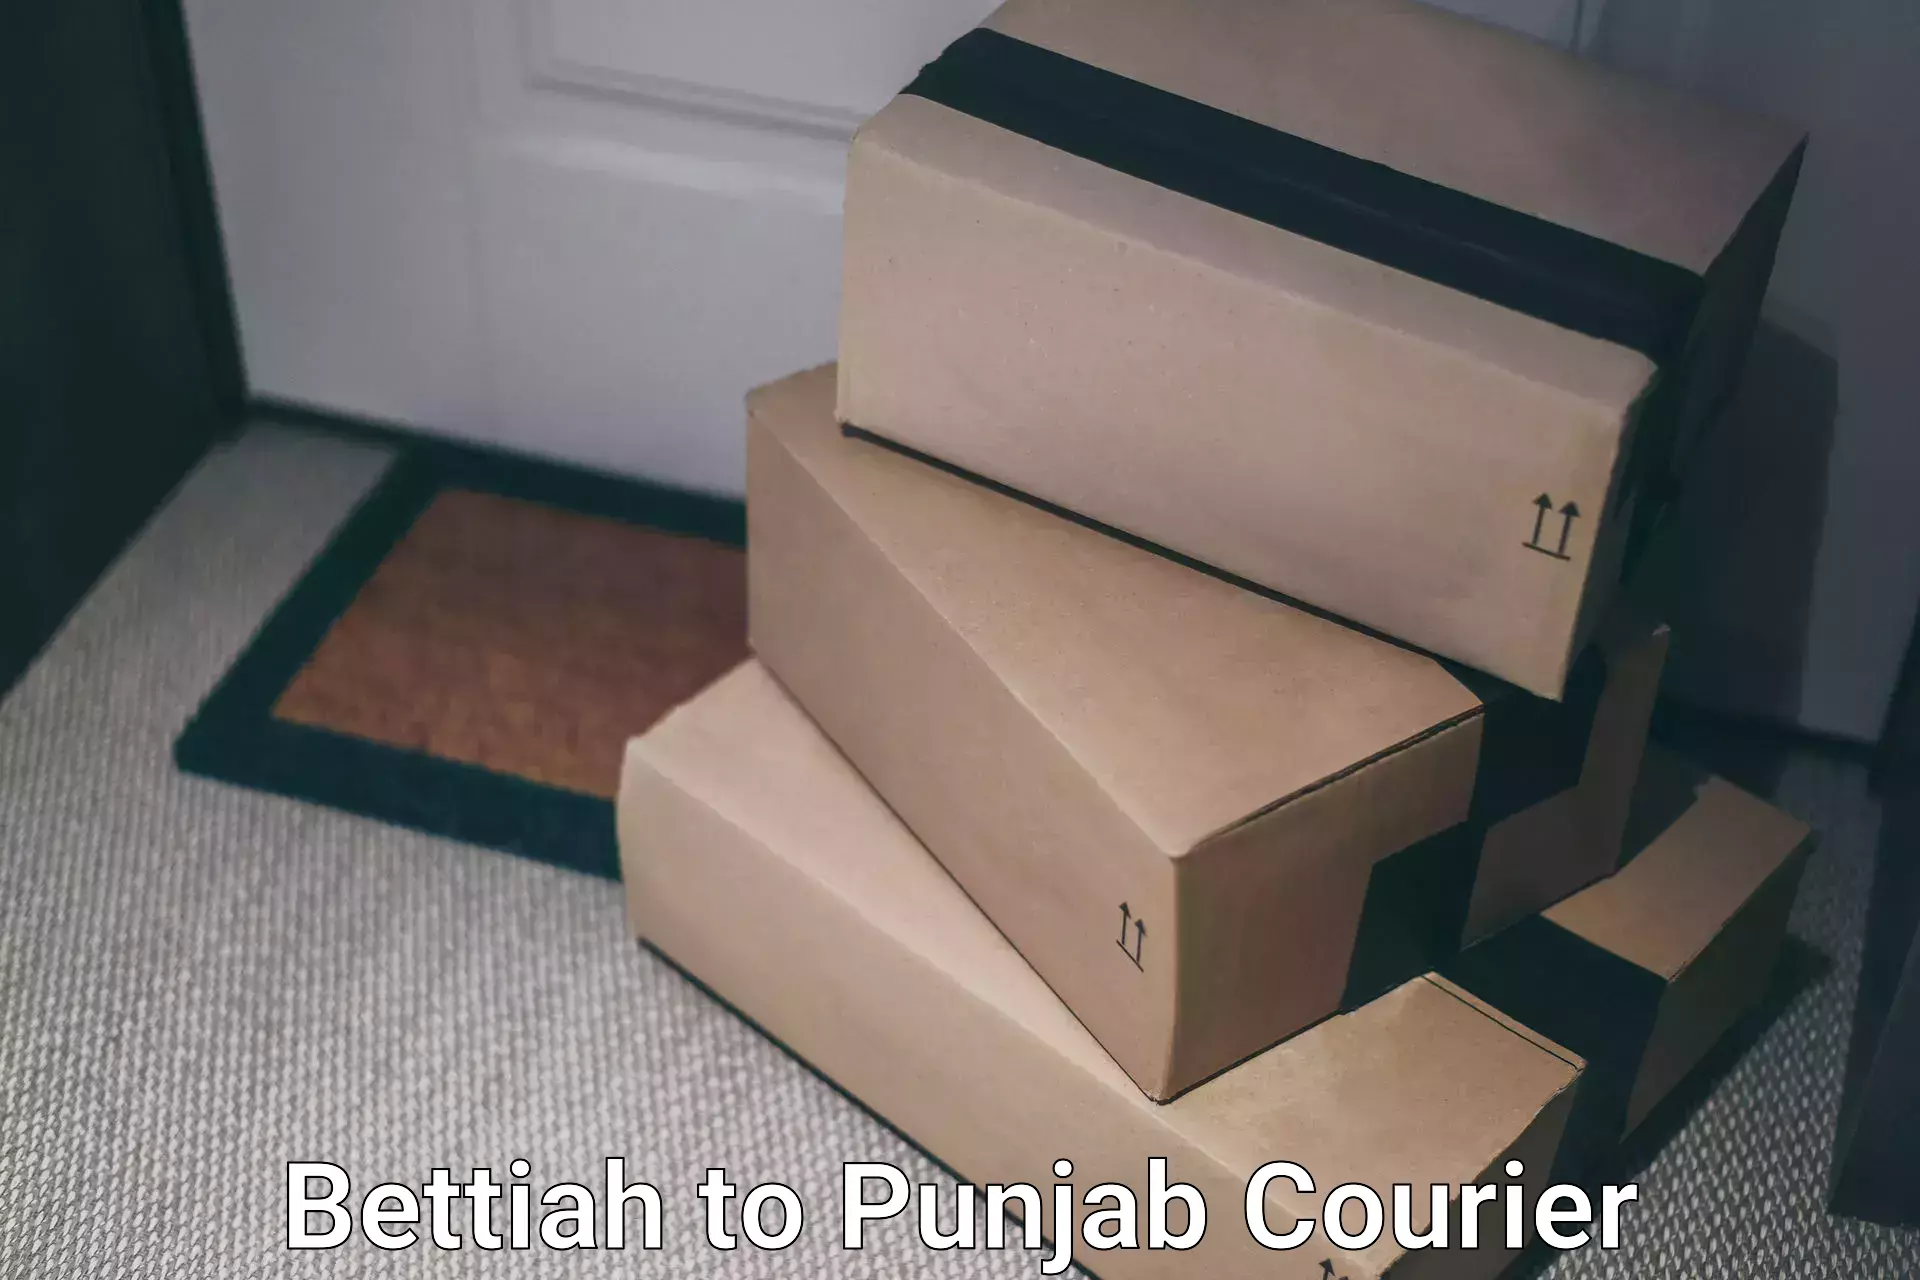 Flexible delivery scheduling Bettiah to Zirakpur